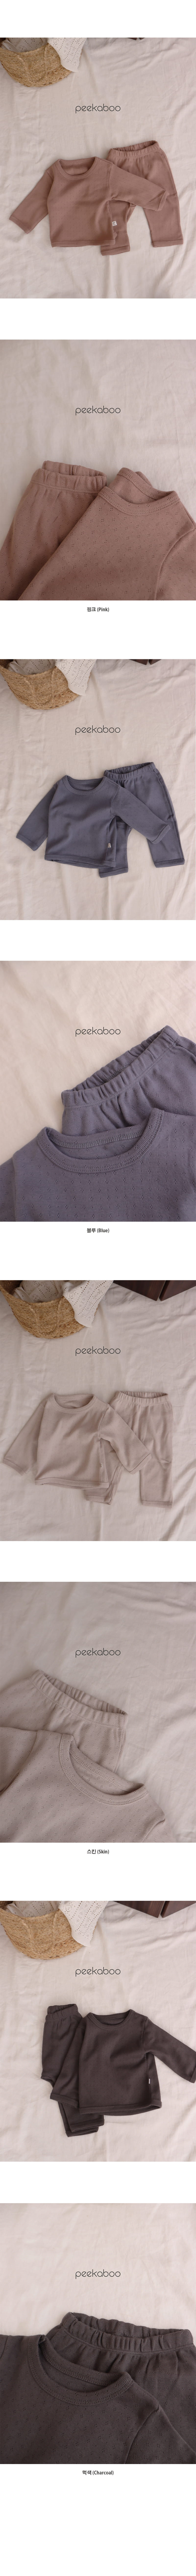 Peekaboo - Korean Baby Fashion - #babyfashion - OO Baby Top Bottom Set - 4